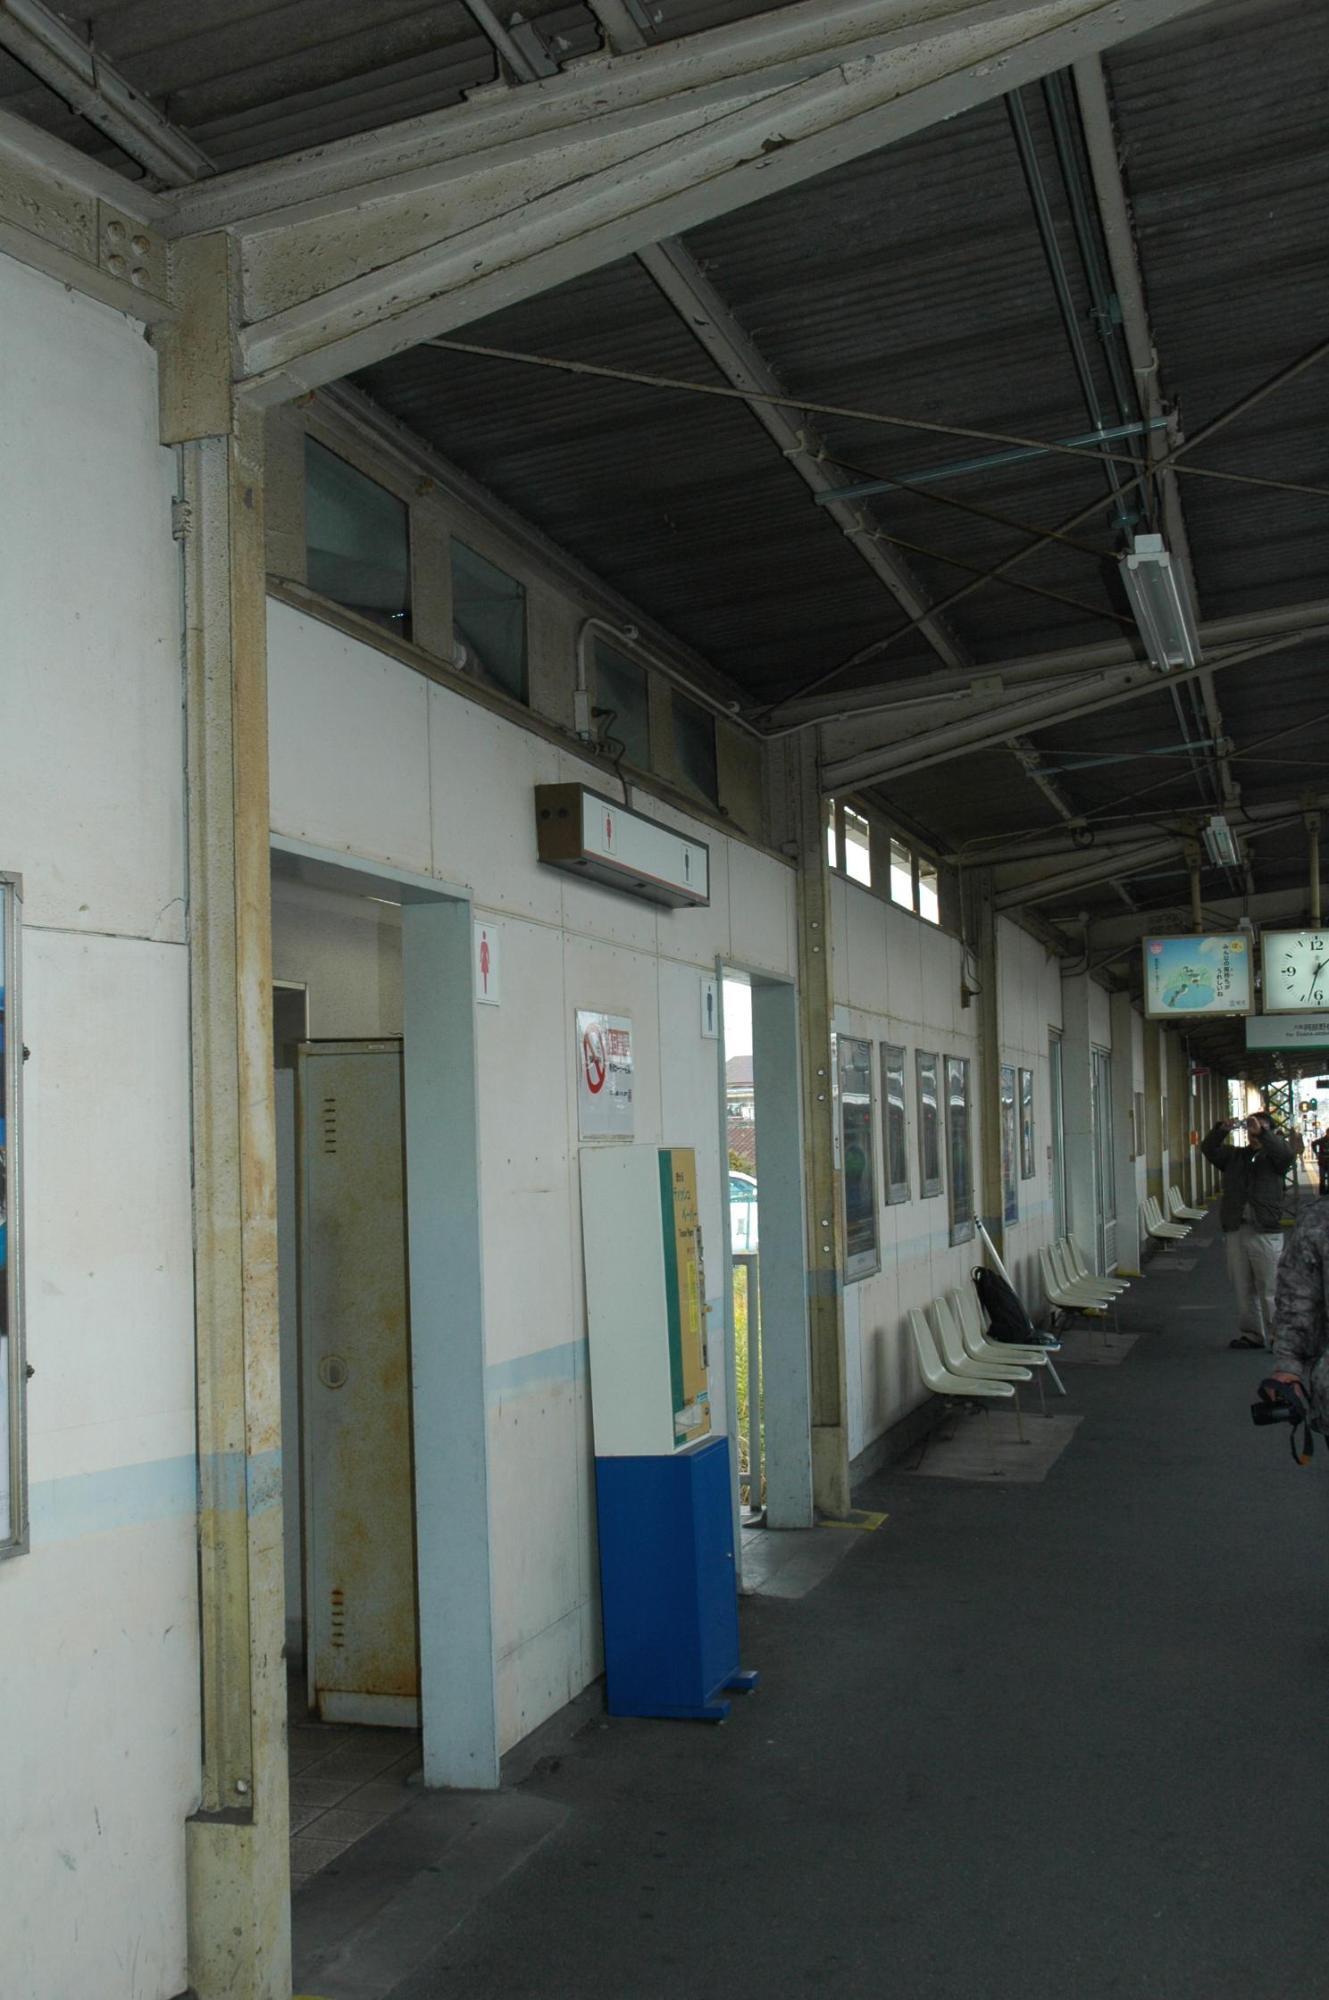 布忍駅上りホームに見られる刻印のある3本の支柱と屋根支えの古レールの画像